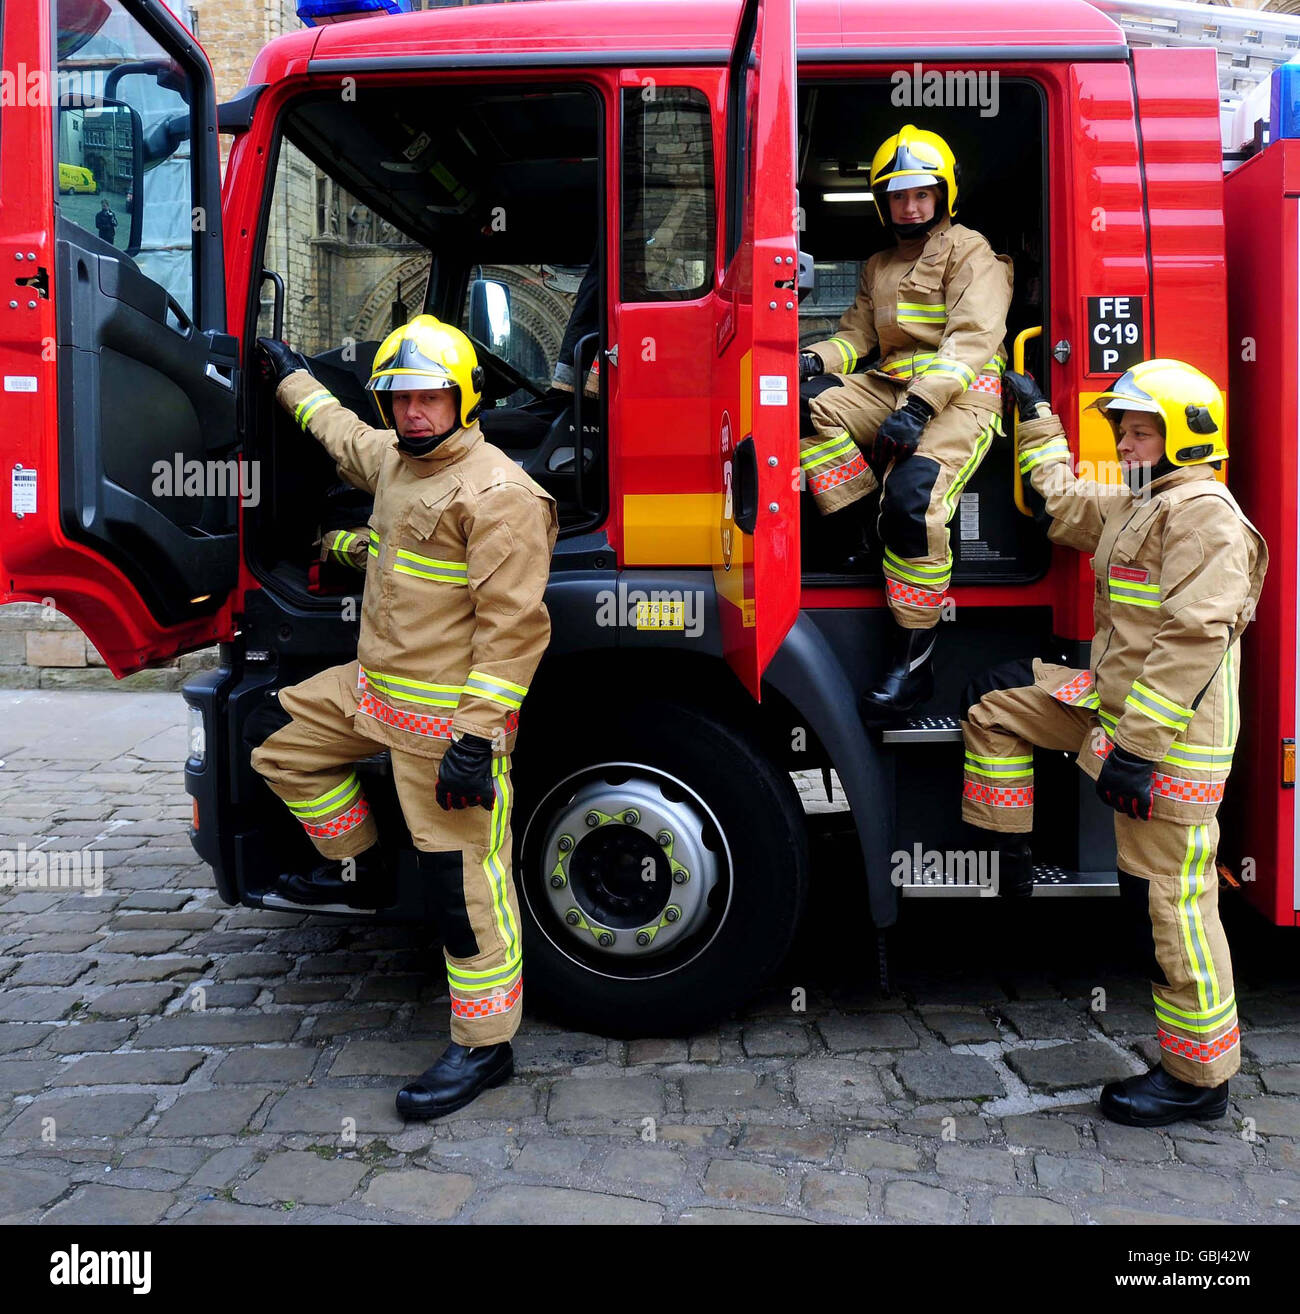 Neue Uniform für die Feuerwehr Stockfotografie - Alamy